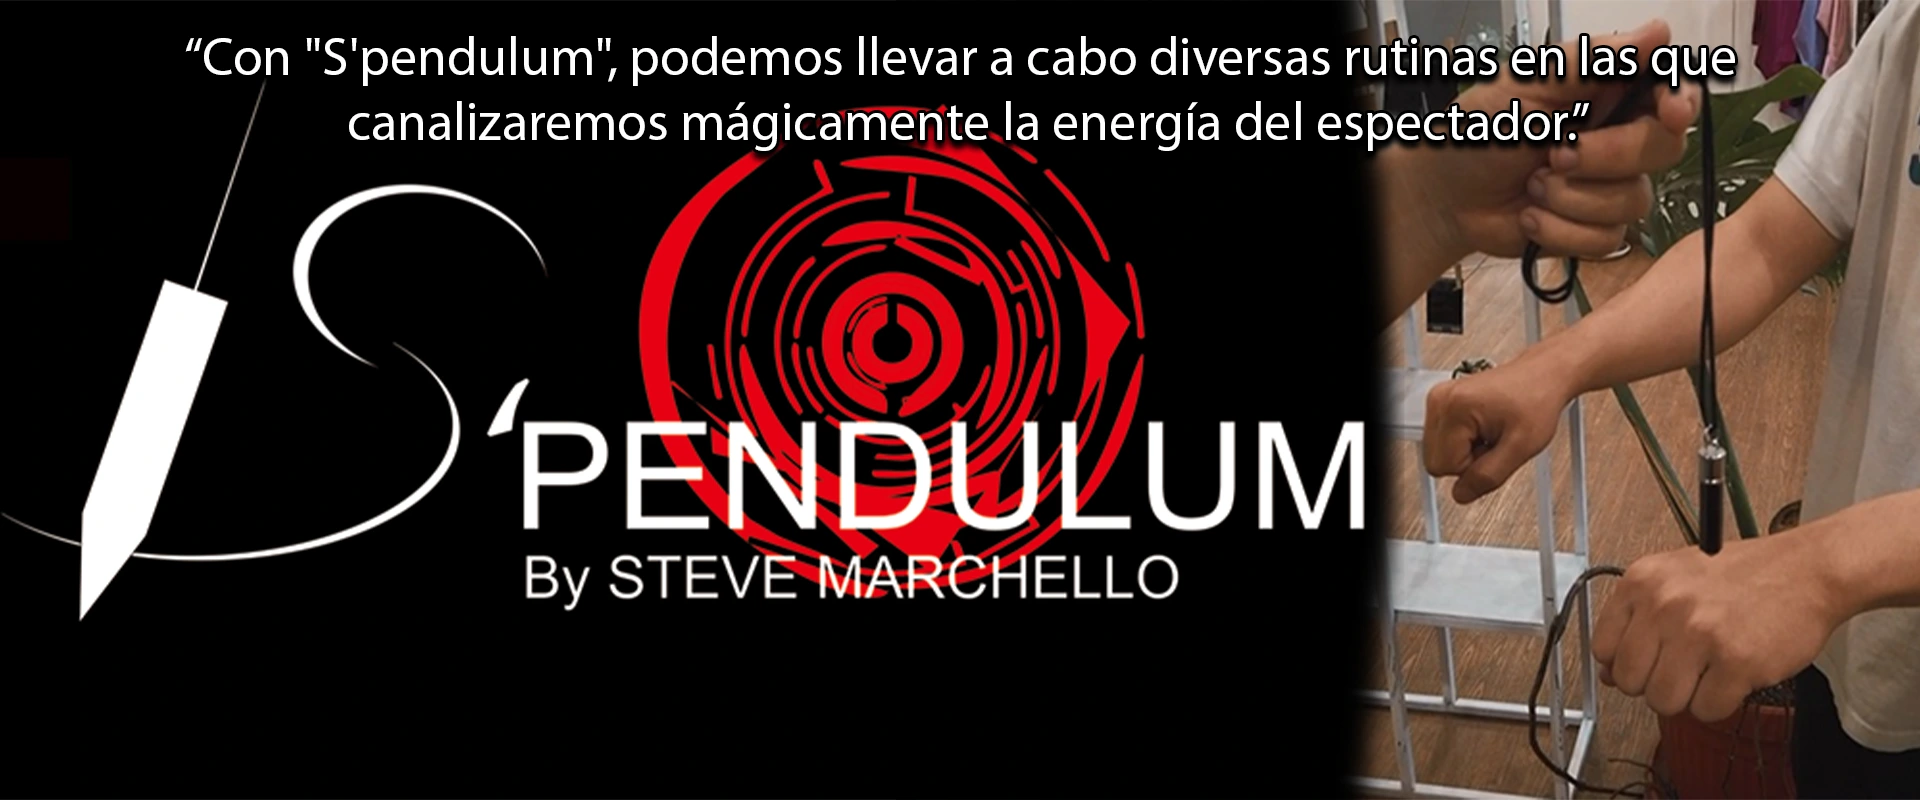 Tienda Mago Chams - S Pendulum by Steve Marchello Banner